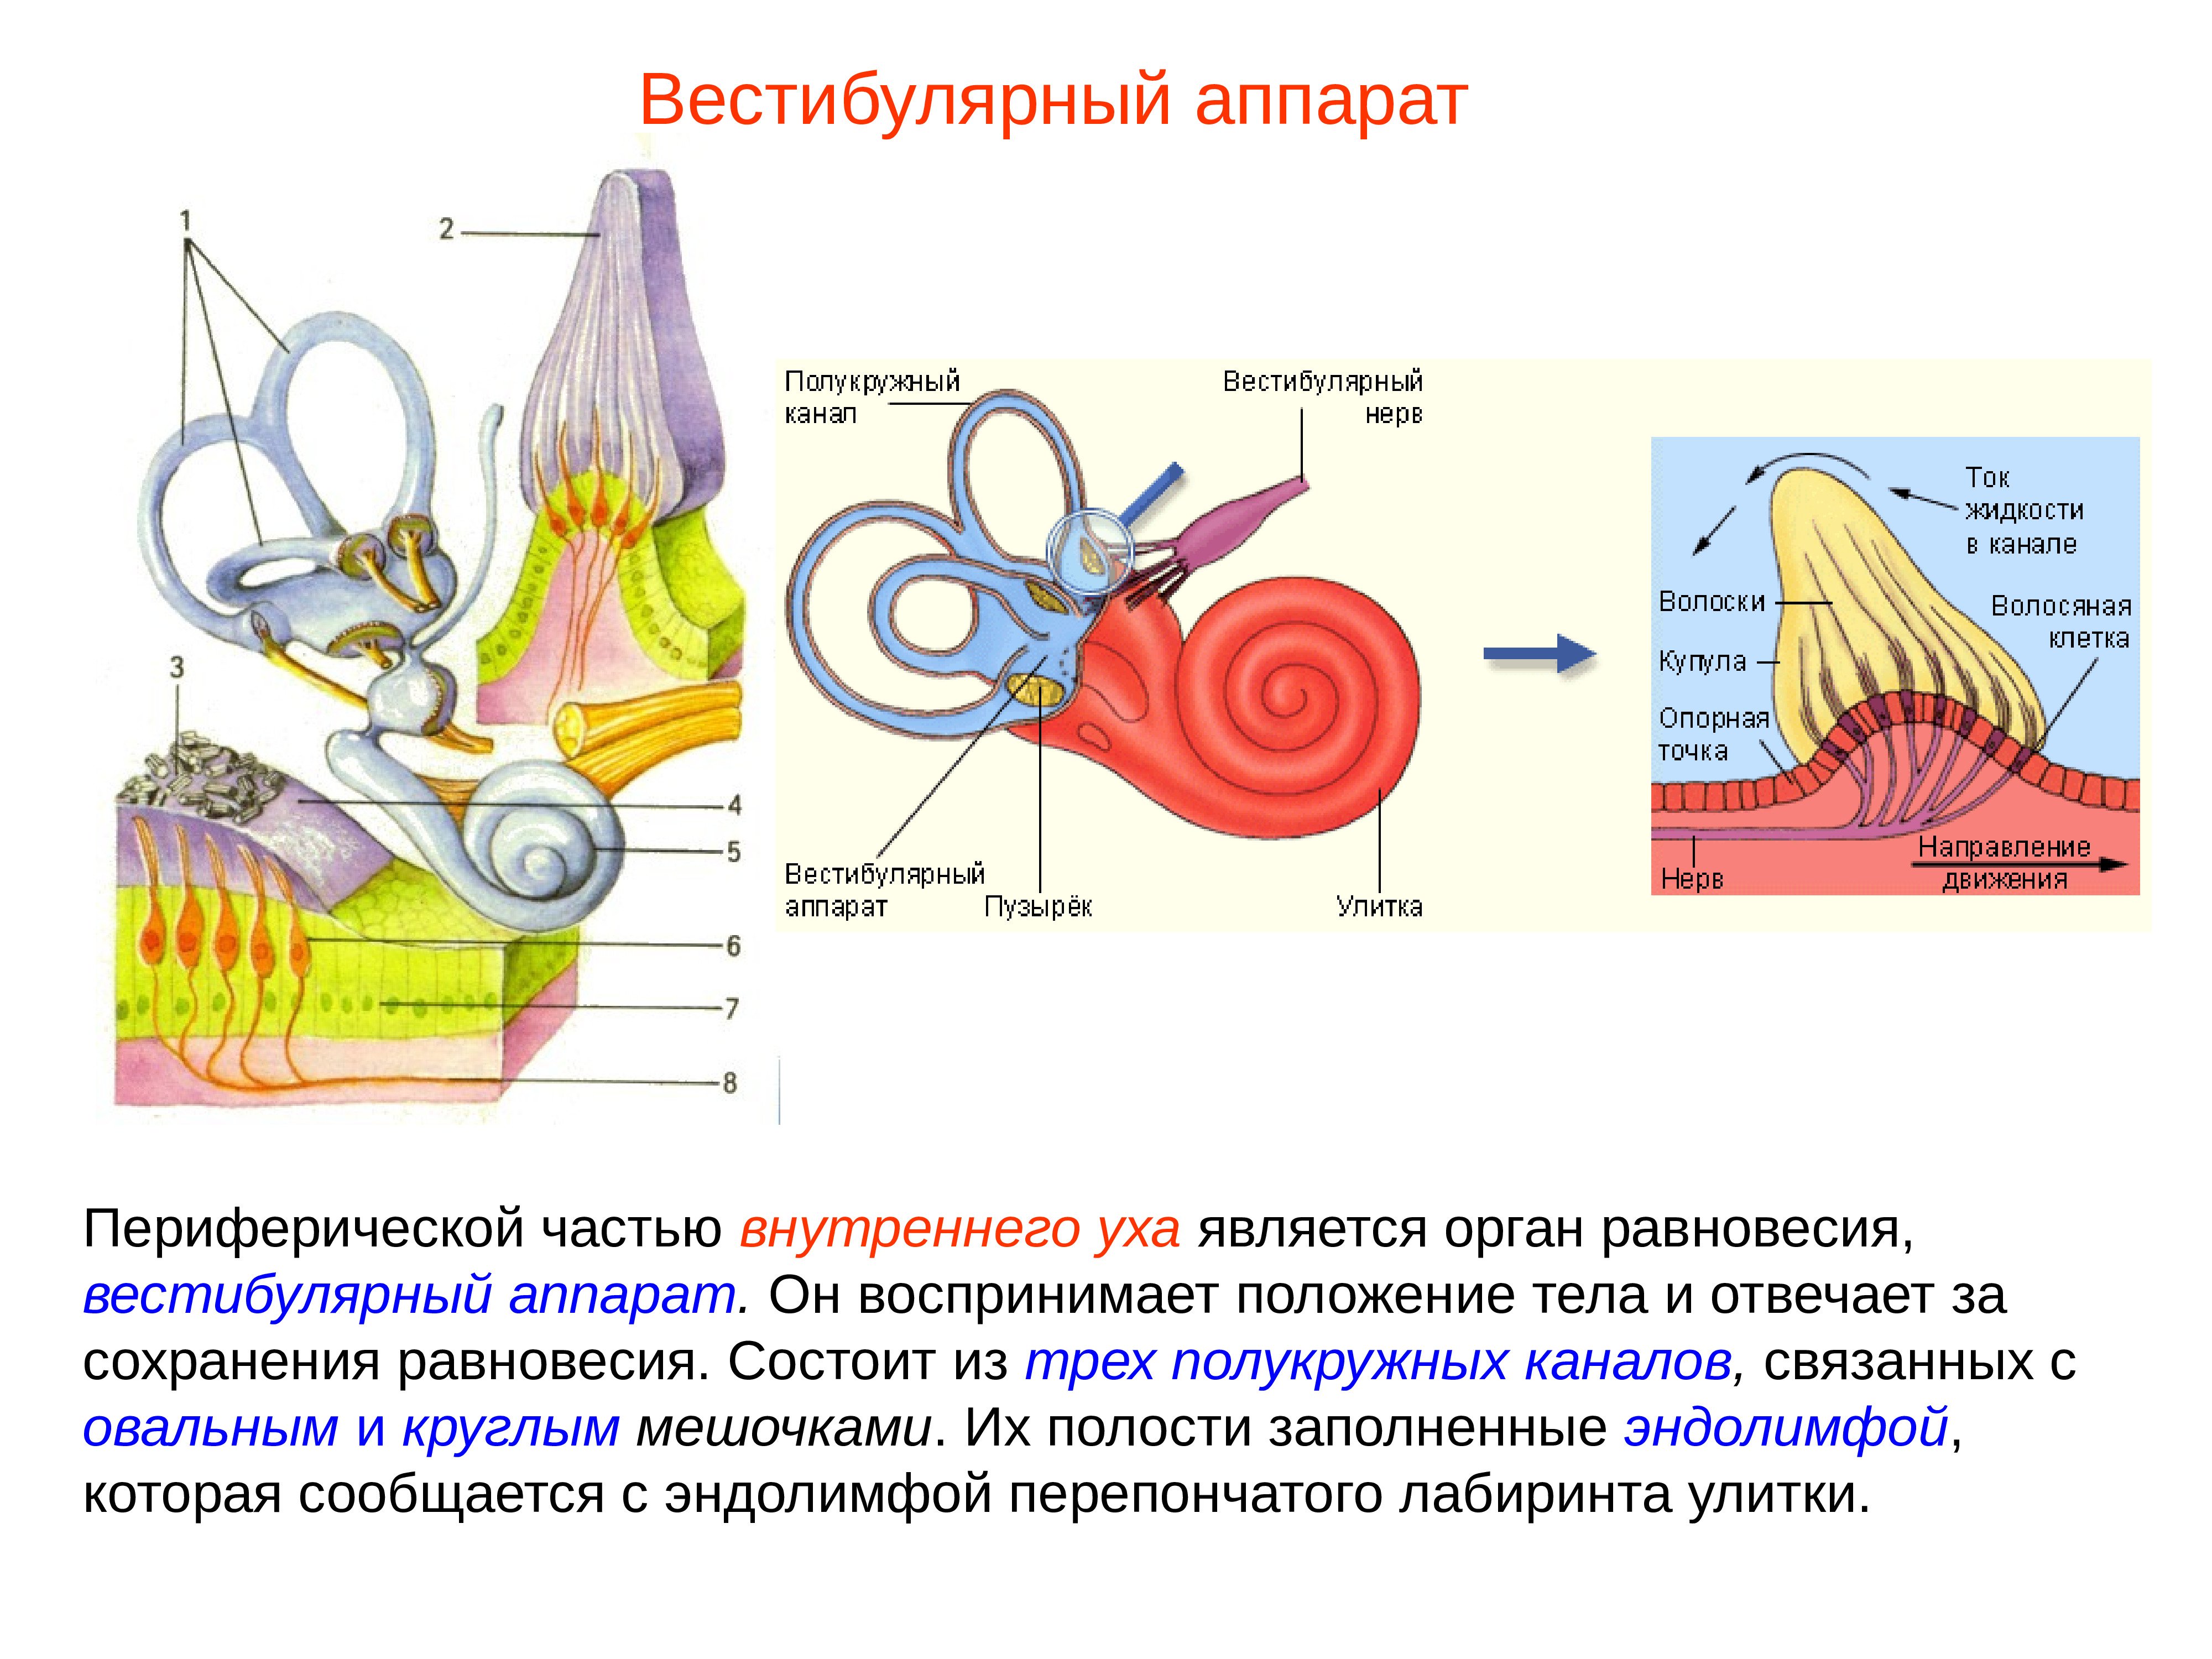 Полукружные каналы внутреннего уха расположены. Внутреннее ухо вестибулярный аппарат. Рецепторный аппарат полукружных каналов. Строение уха и вестибулярного аппарата. Улитка вестибулярный аппарат.